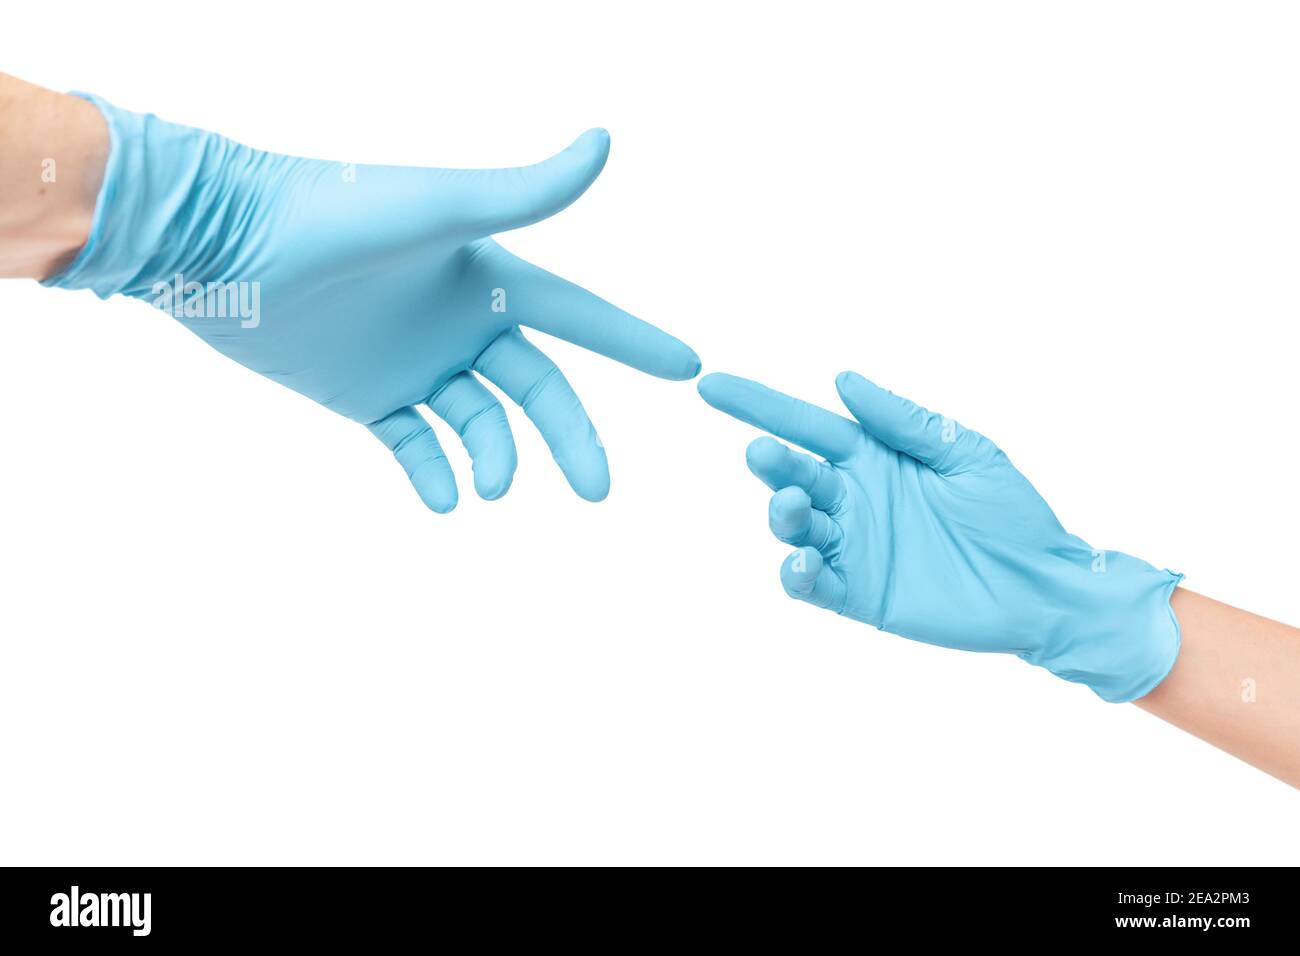 Zwei Hände in schützenden medizinischen Handschuhen greifen sich gegenseitig an und berühren sich fast. Allegorie eines berühmten Gemäldes von Michelangelo Buonarroti die Schöpfung Stockfoto